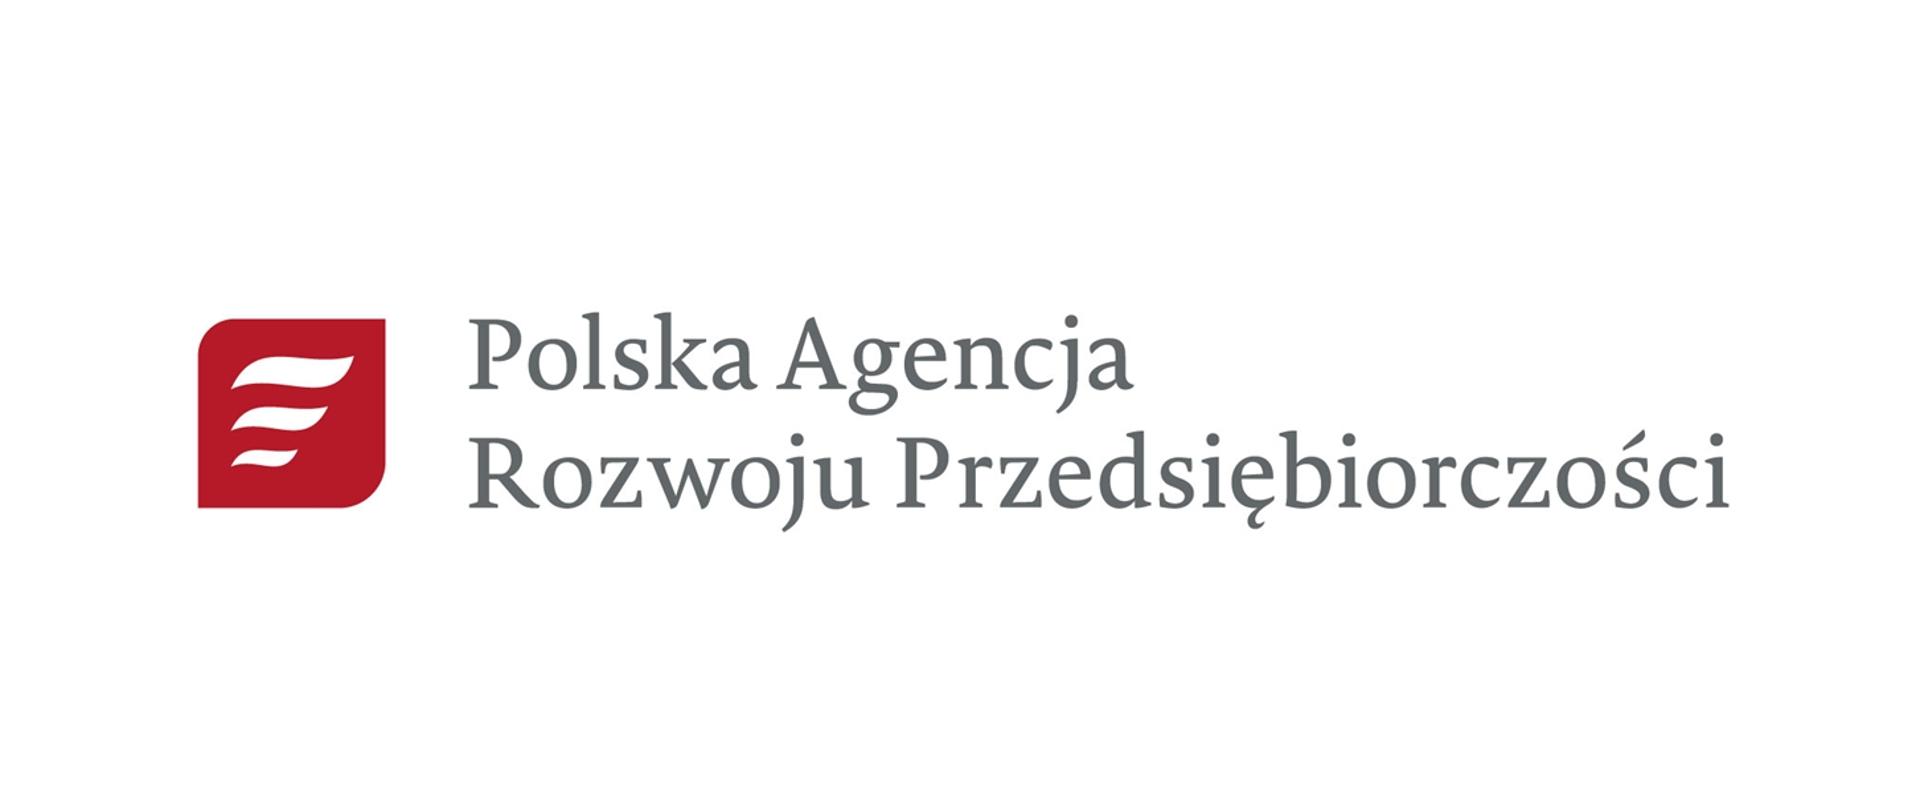 grafika przedstawia logotyp z tekstem: Polska Agencja Rozwoju Przedsiębiorczości